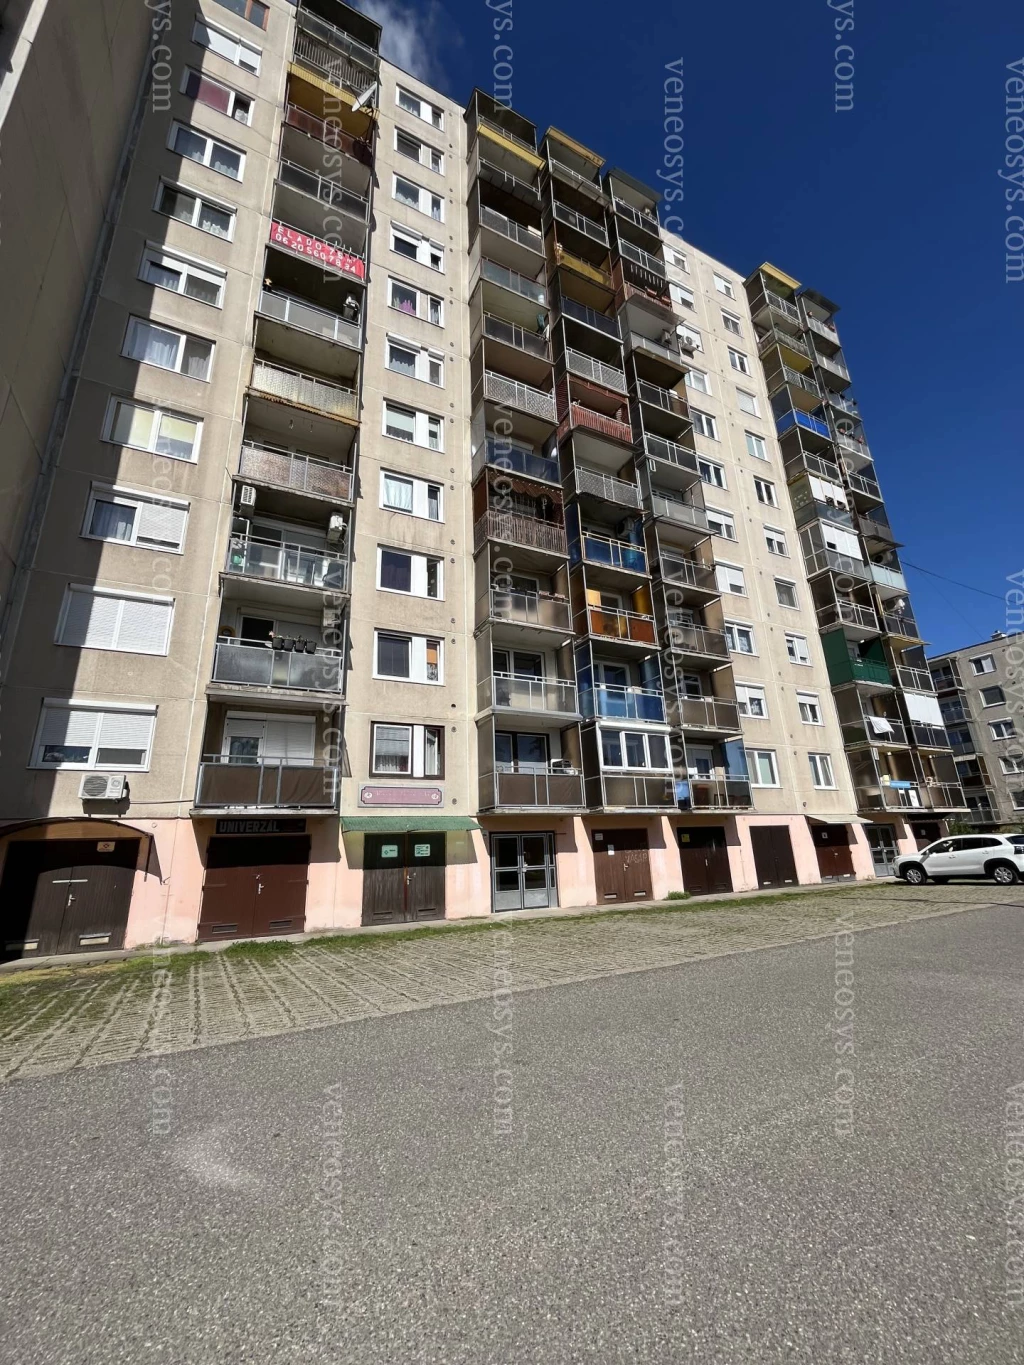 Eladásra kínálok Kazincbarcika egyik legkedveltebb részén egy 75 m2-es, 3 szobás + háztartási helyiséges, jó állapotú lakást.